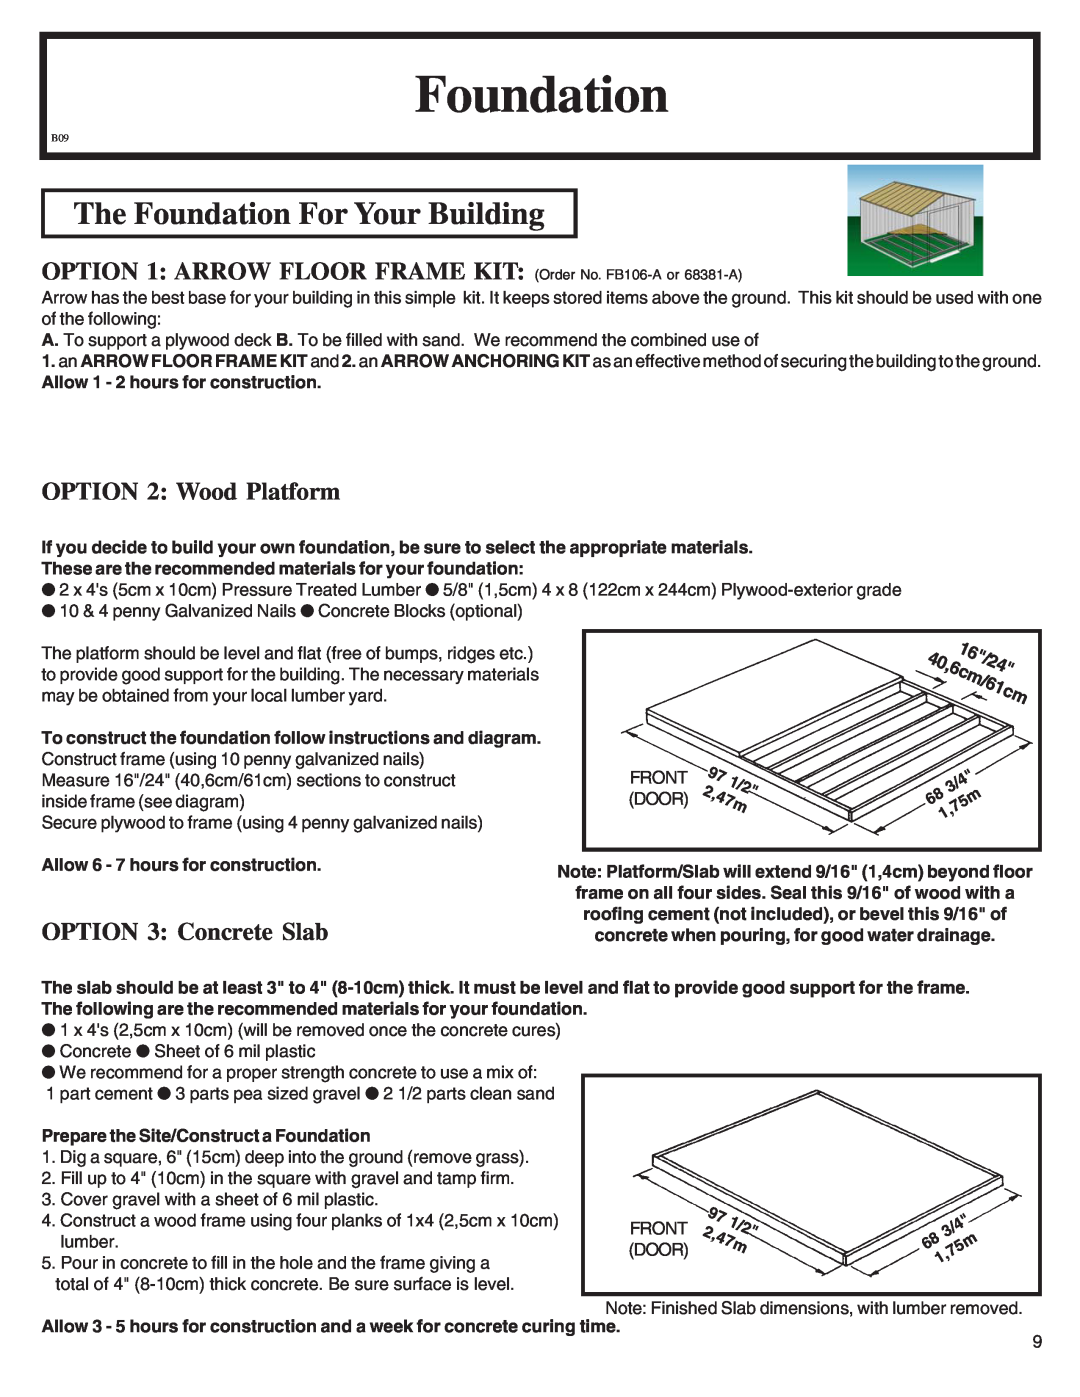 Arrow Plastic LM86 The Foundation For Your Building, OPTION 2 Wood Platform, OPTION 3 Concrete Slab, 971/2 2,47m 